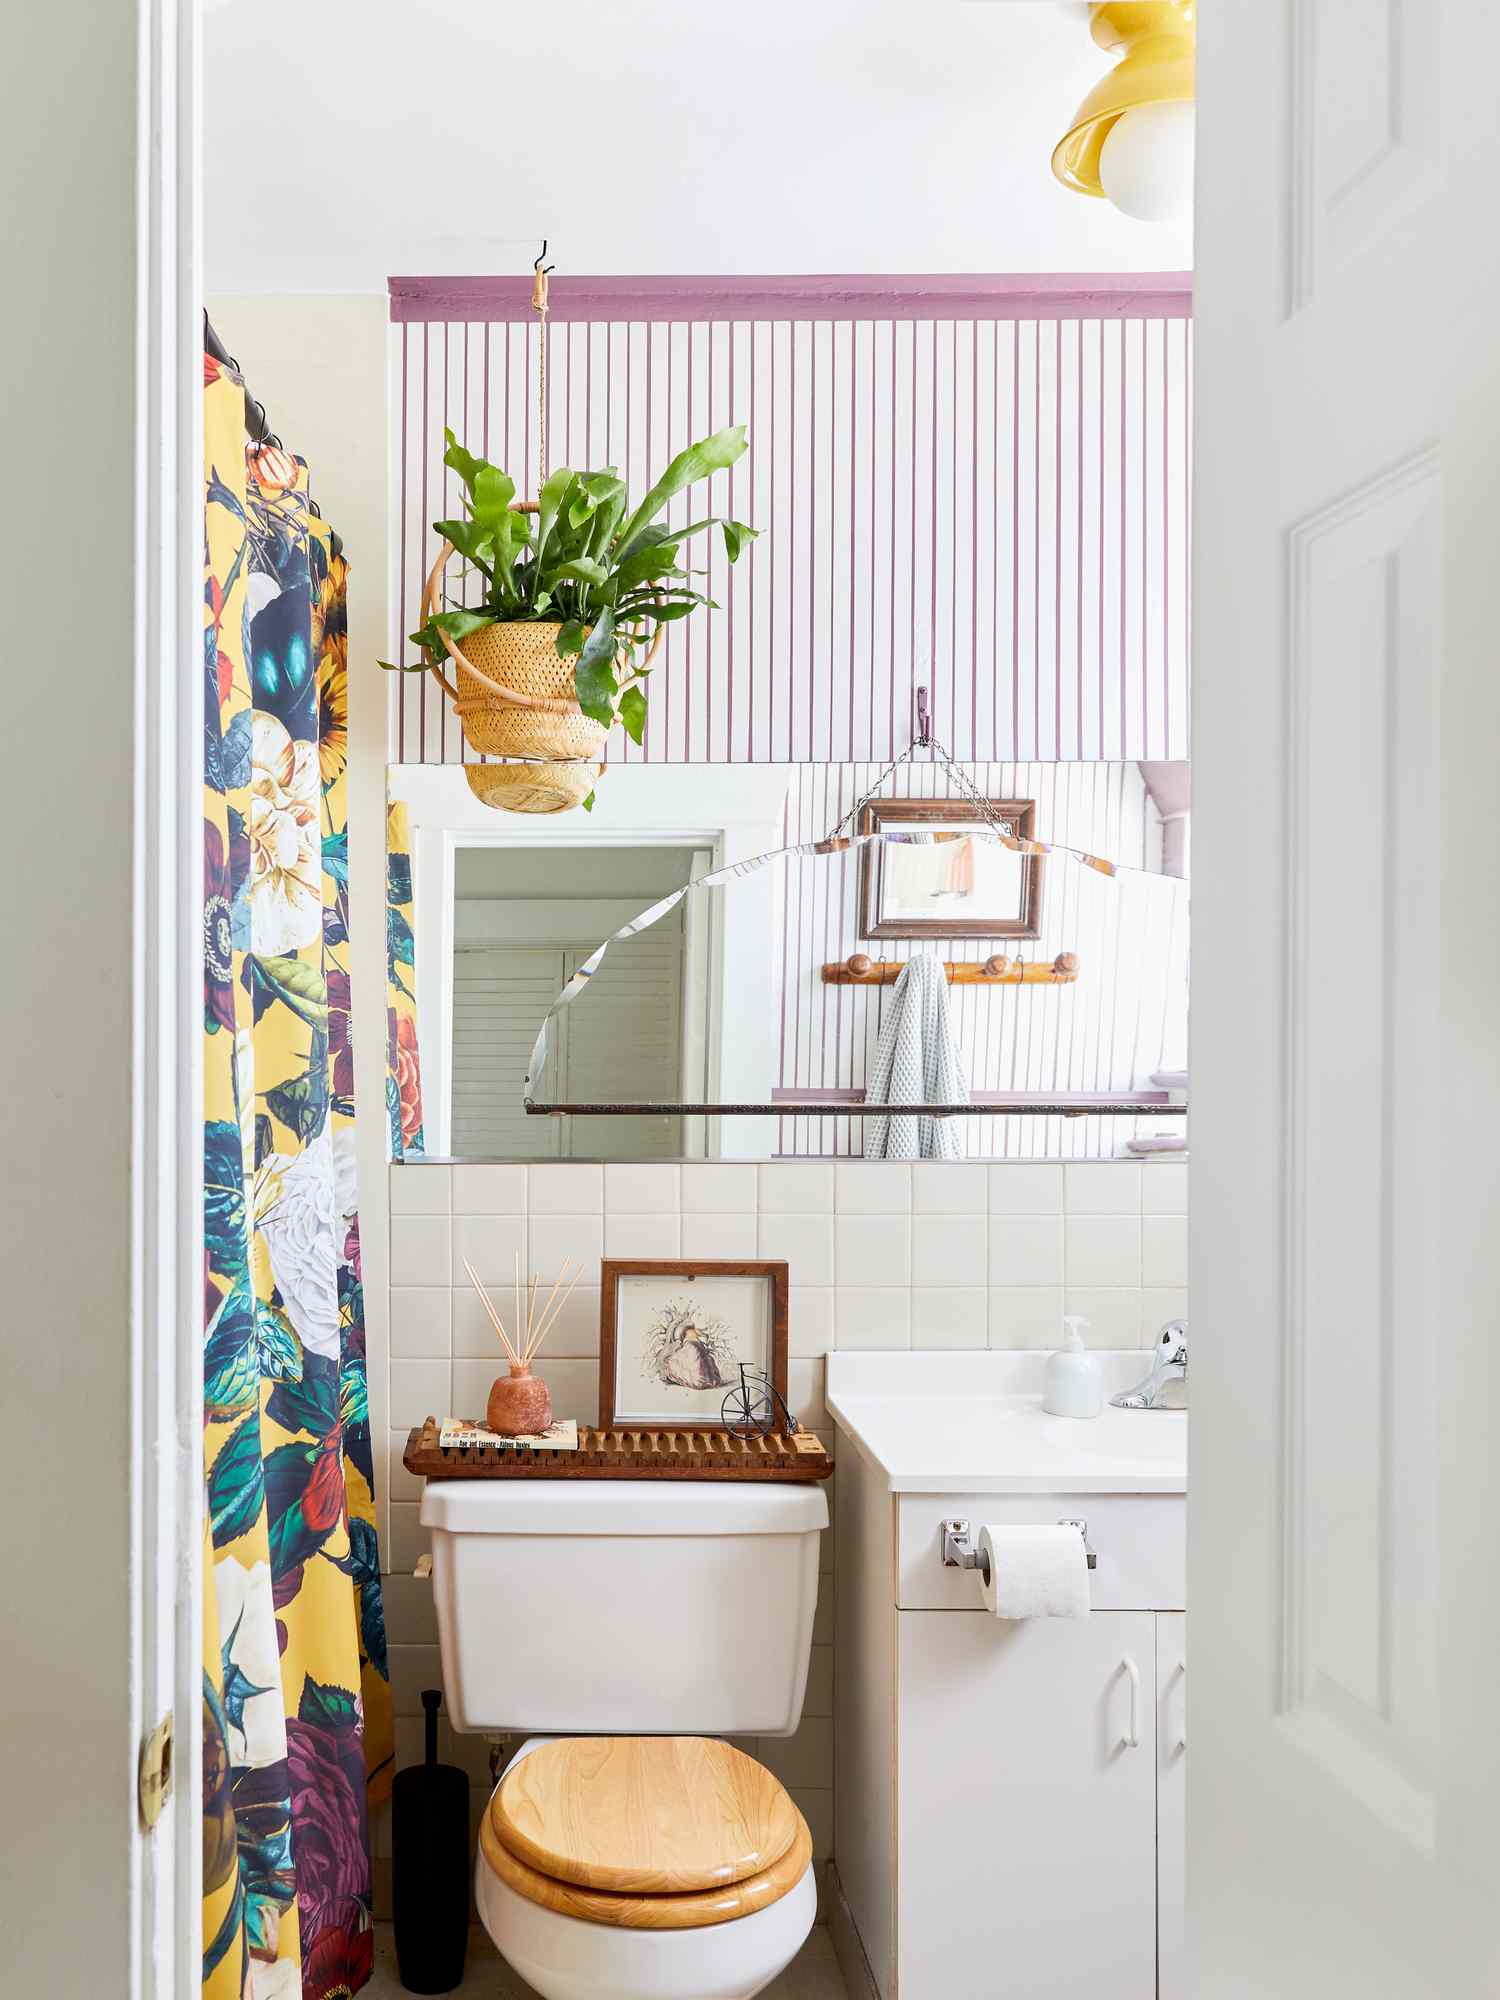 Lila akzentuiertes Badezimmer mit Toilettenpapierhalter auf dem Waschtischunterschrank